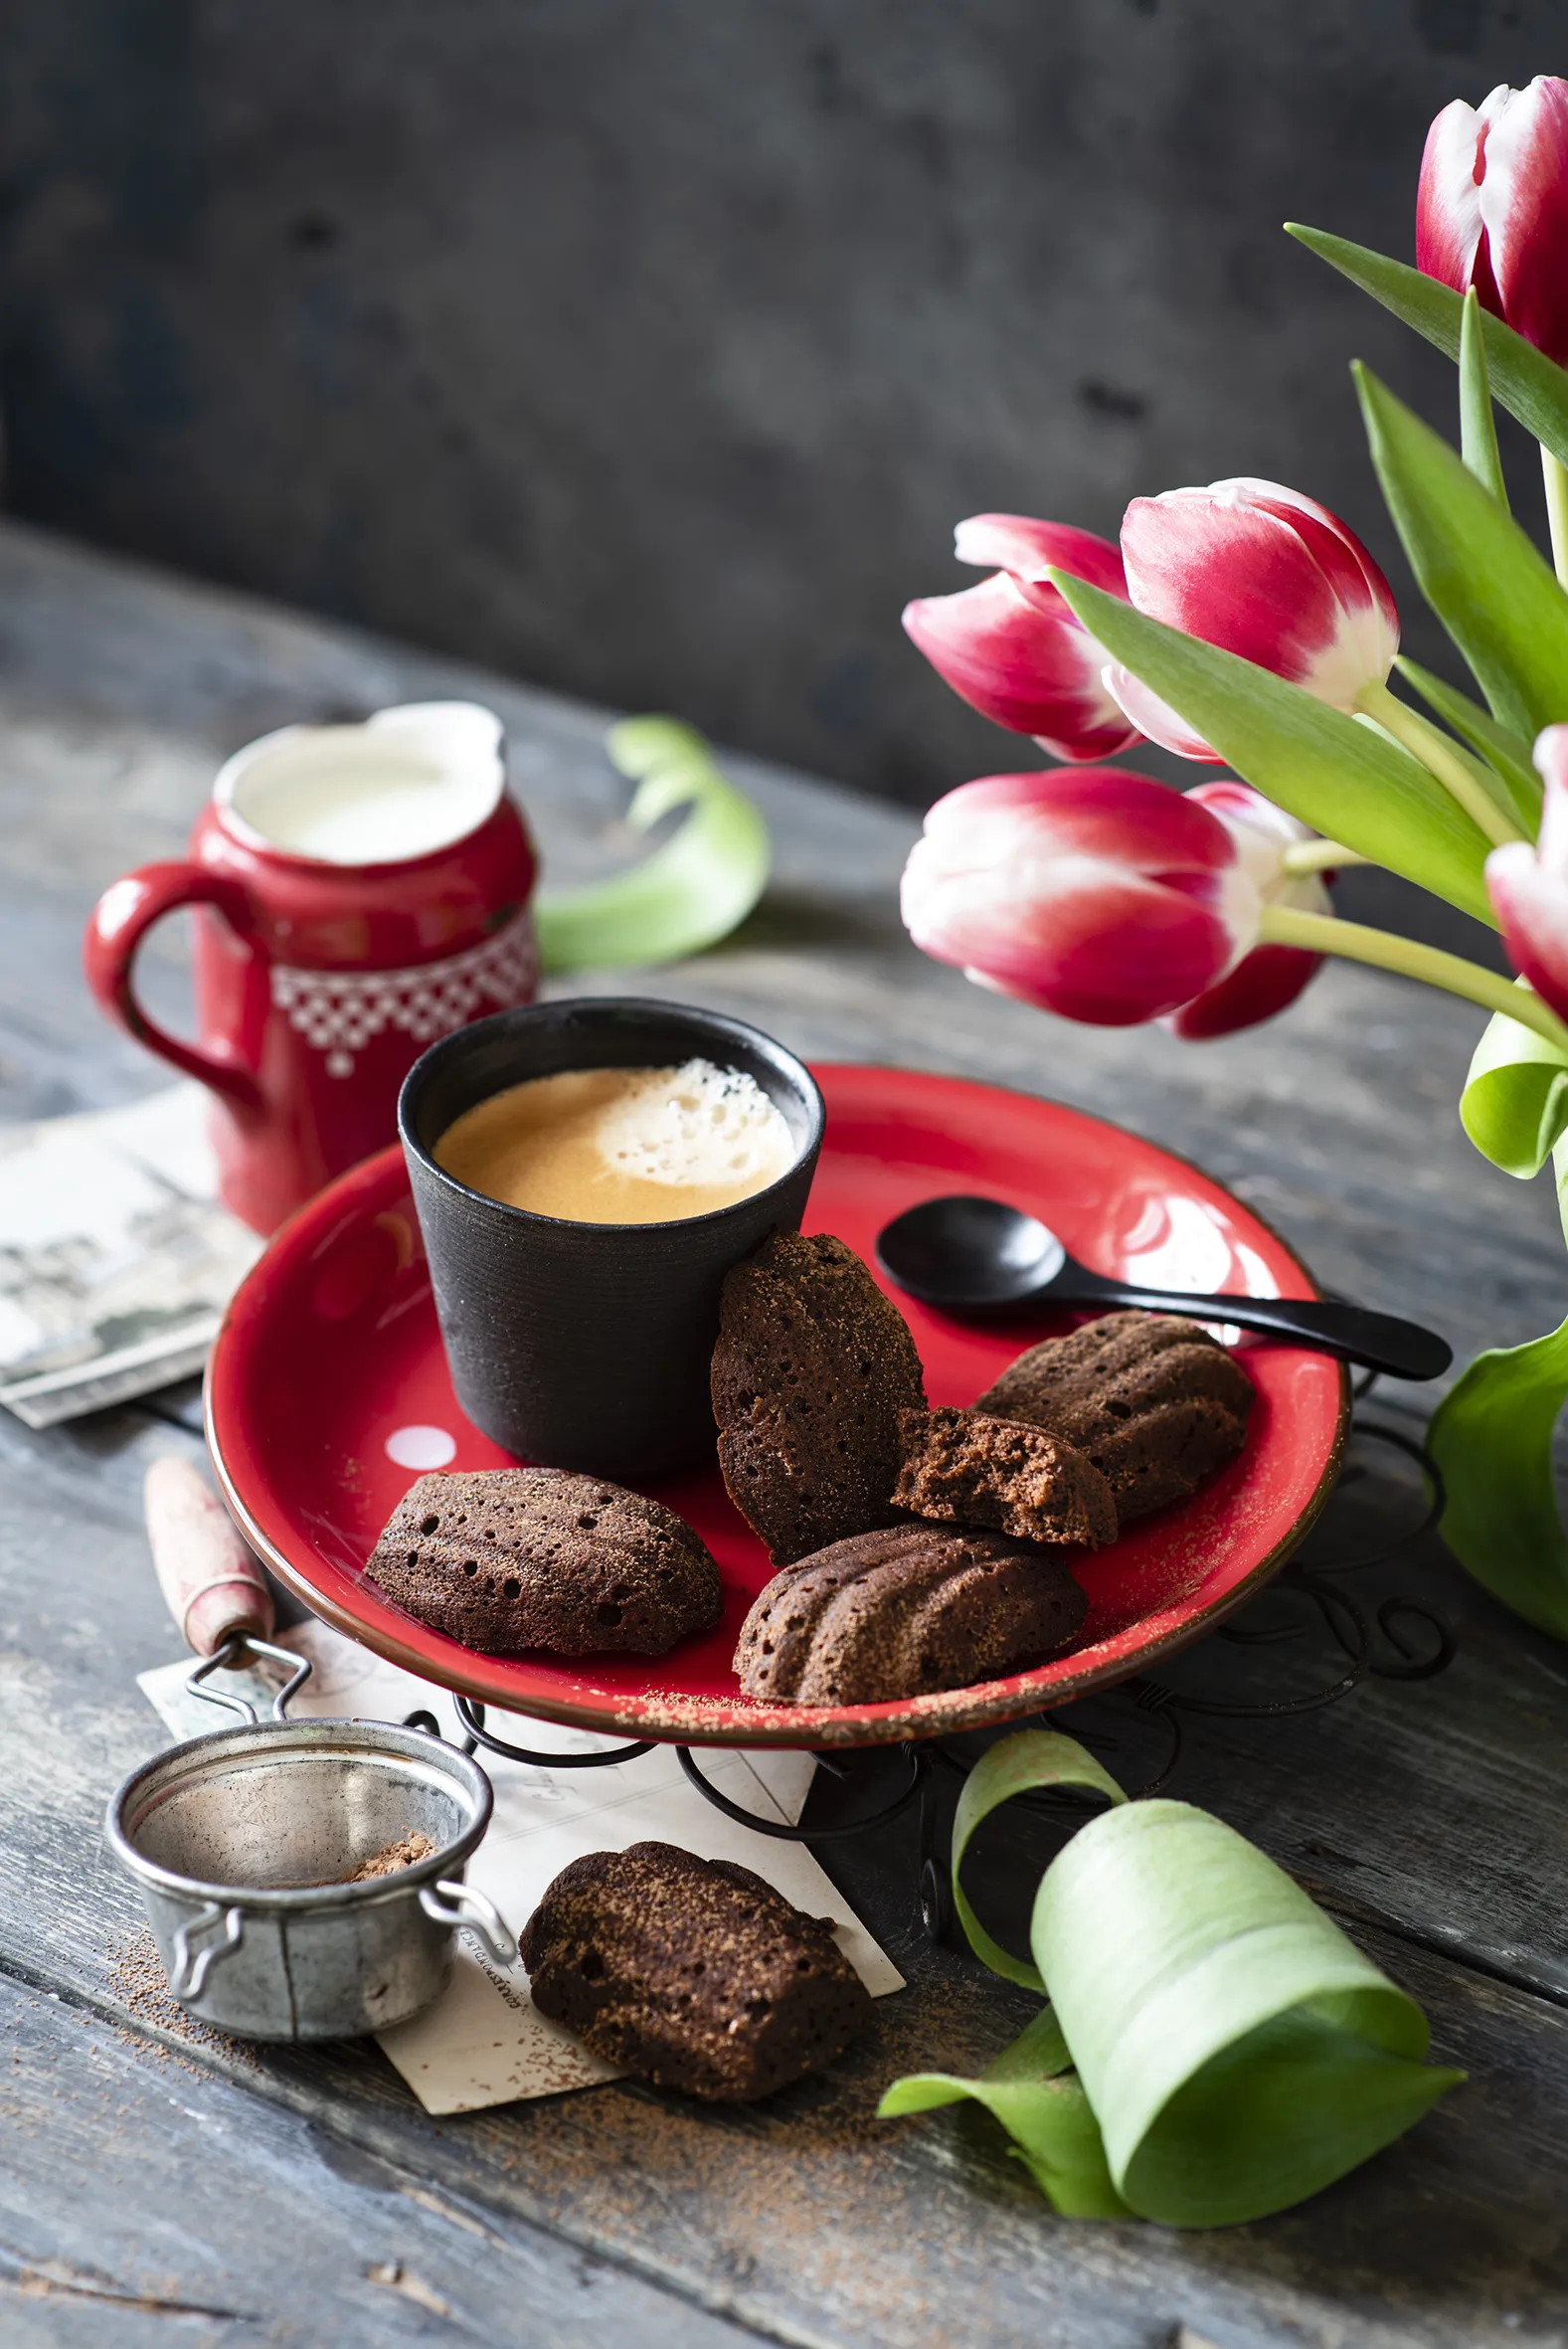 Кофе и цветы. Тюльпаны и кофе. Завтрак с тюльпанами. Чашечка кофе с тюльпанами. Кофе и тюльпаны картинки